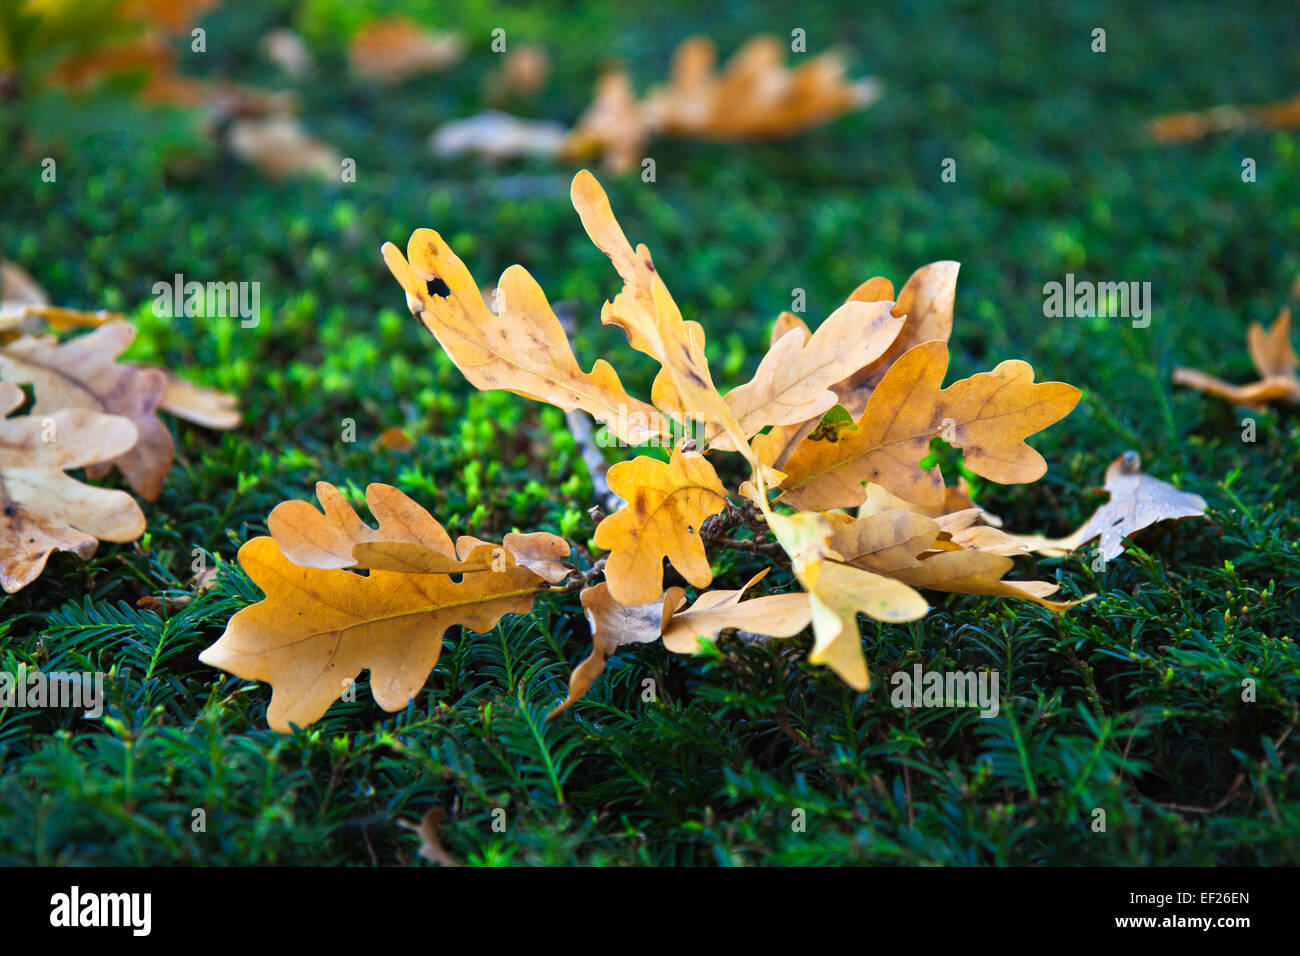 Autumn foliage on a hedge. Stock Photo